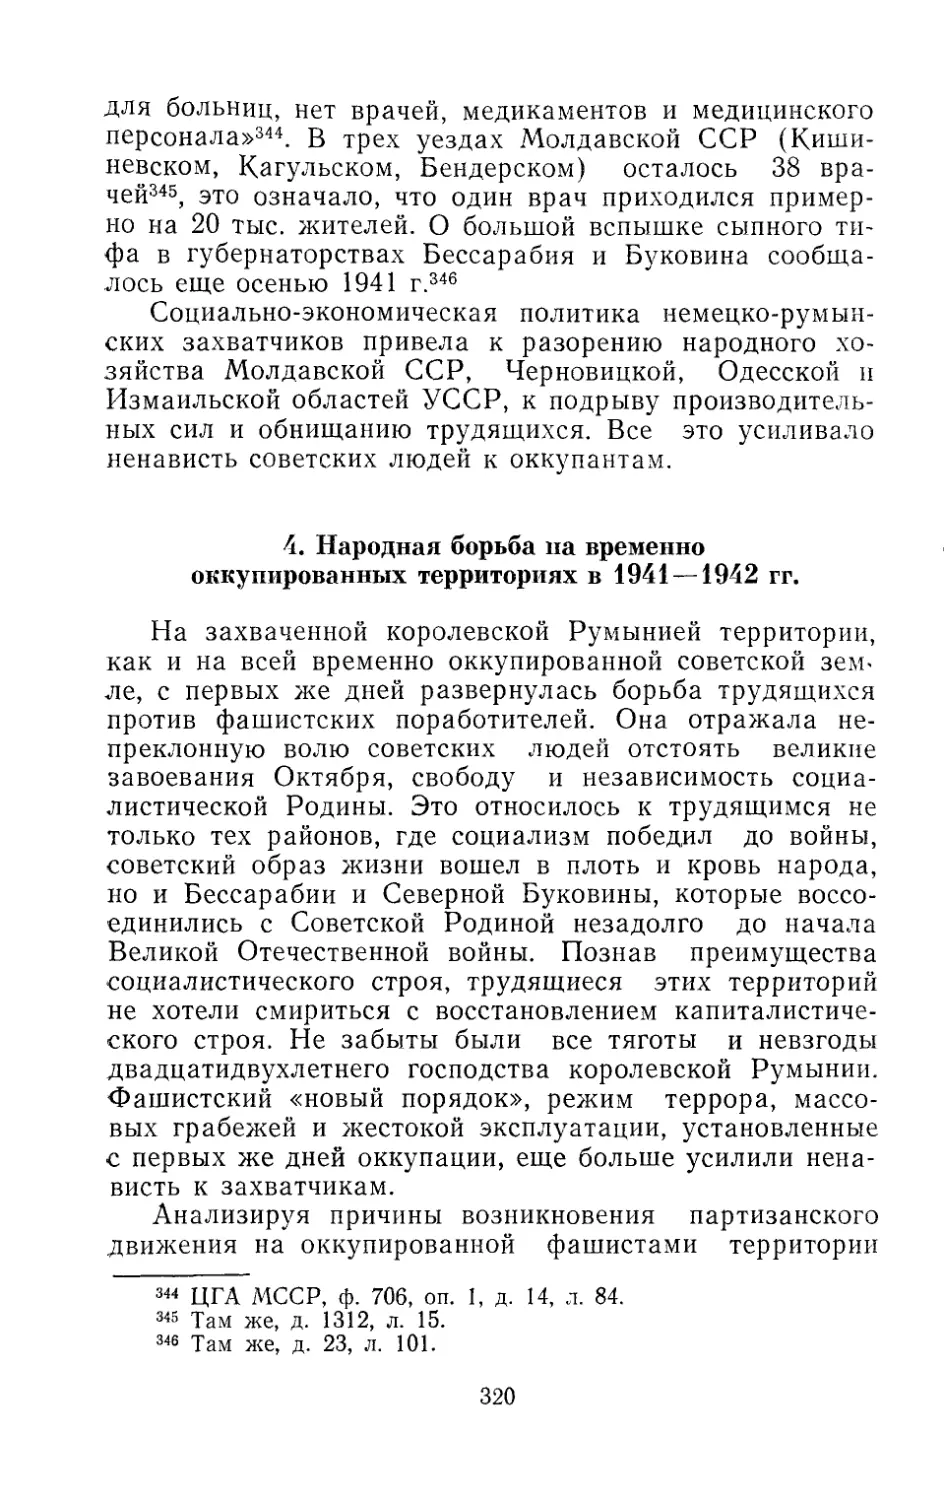 4. Народная борьба на временно оккупированных территориях в 1941 — 1942 гг